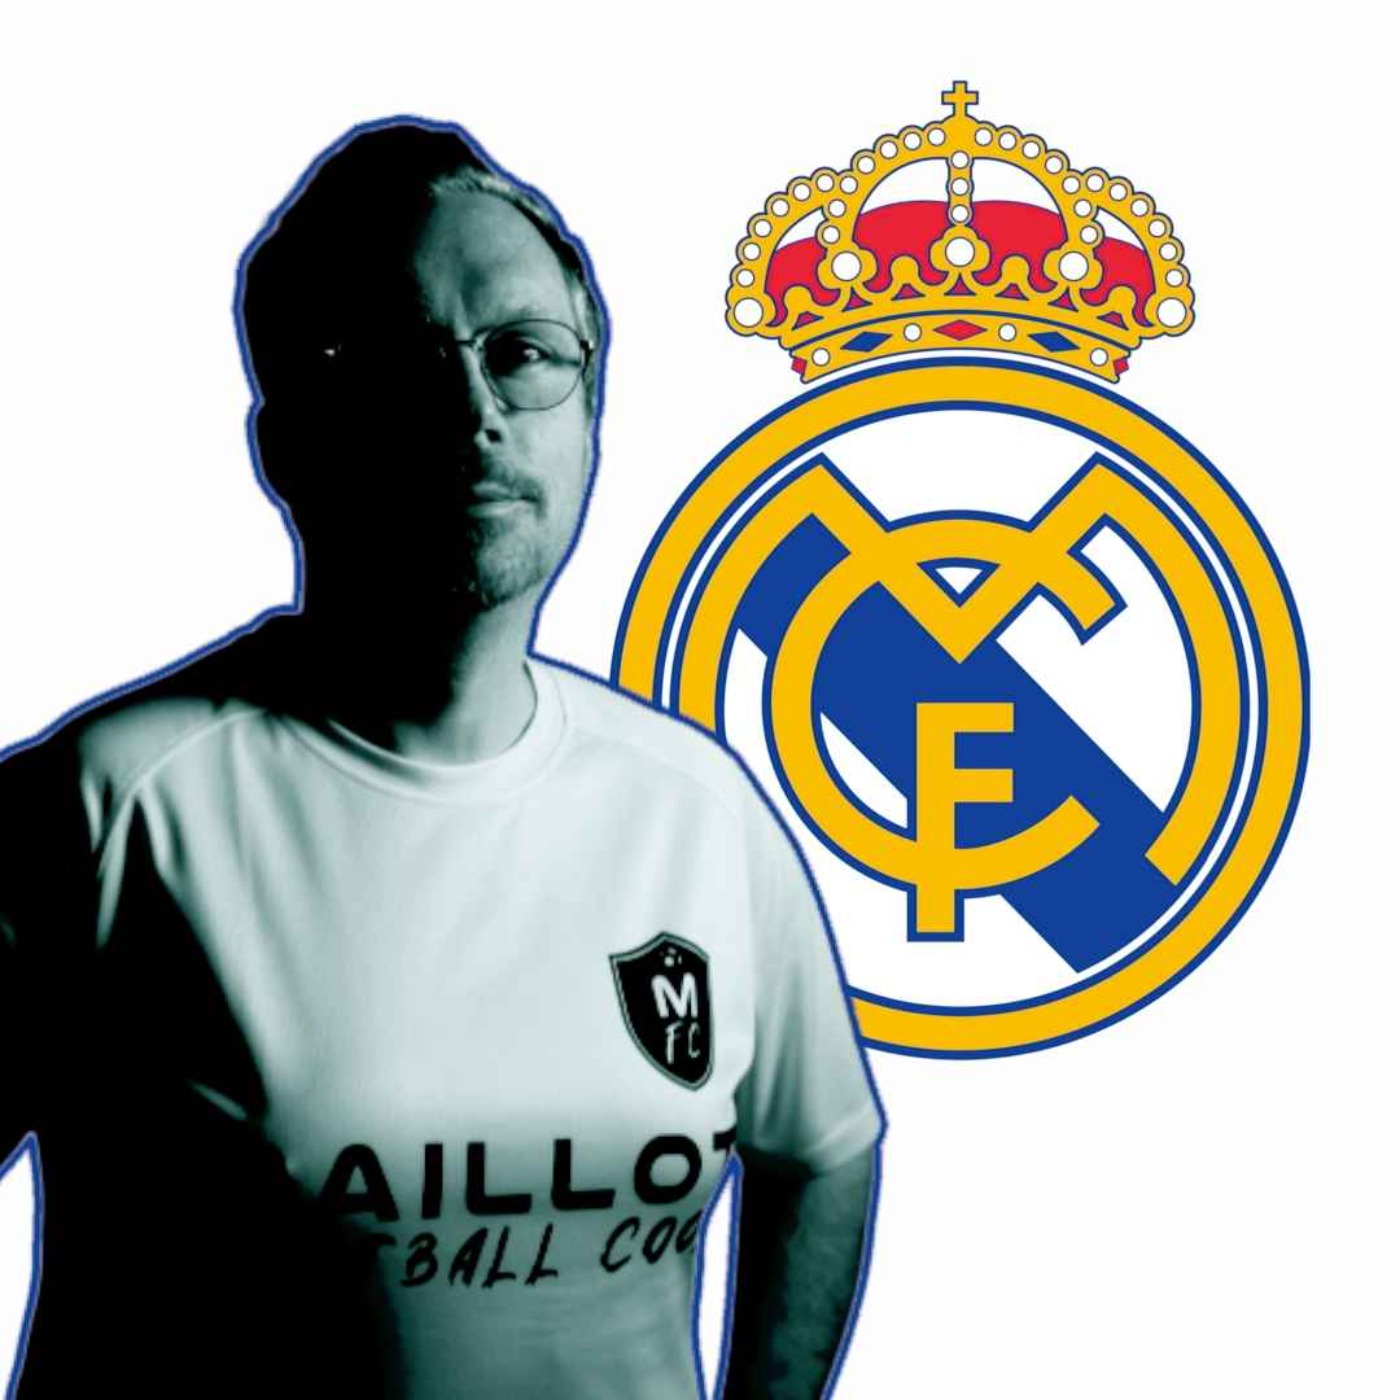 Le maillot merengue du Real Madrid, la pureté de sa Majesté